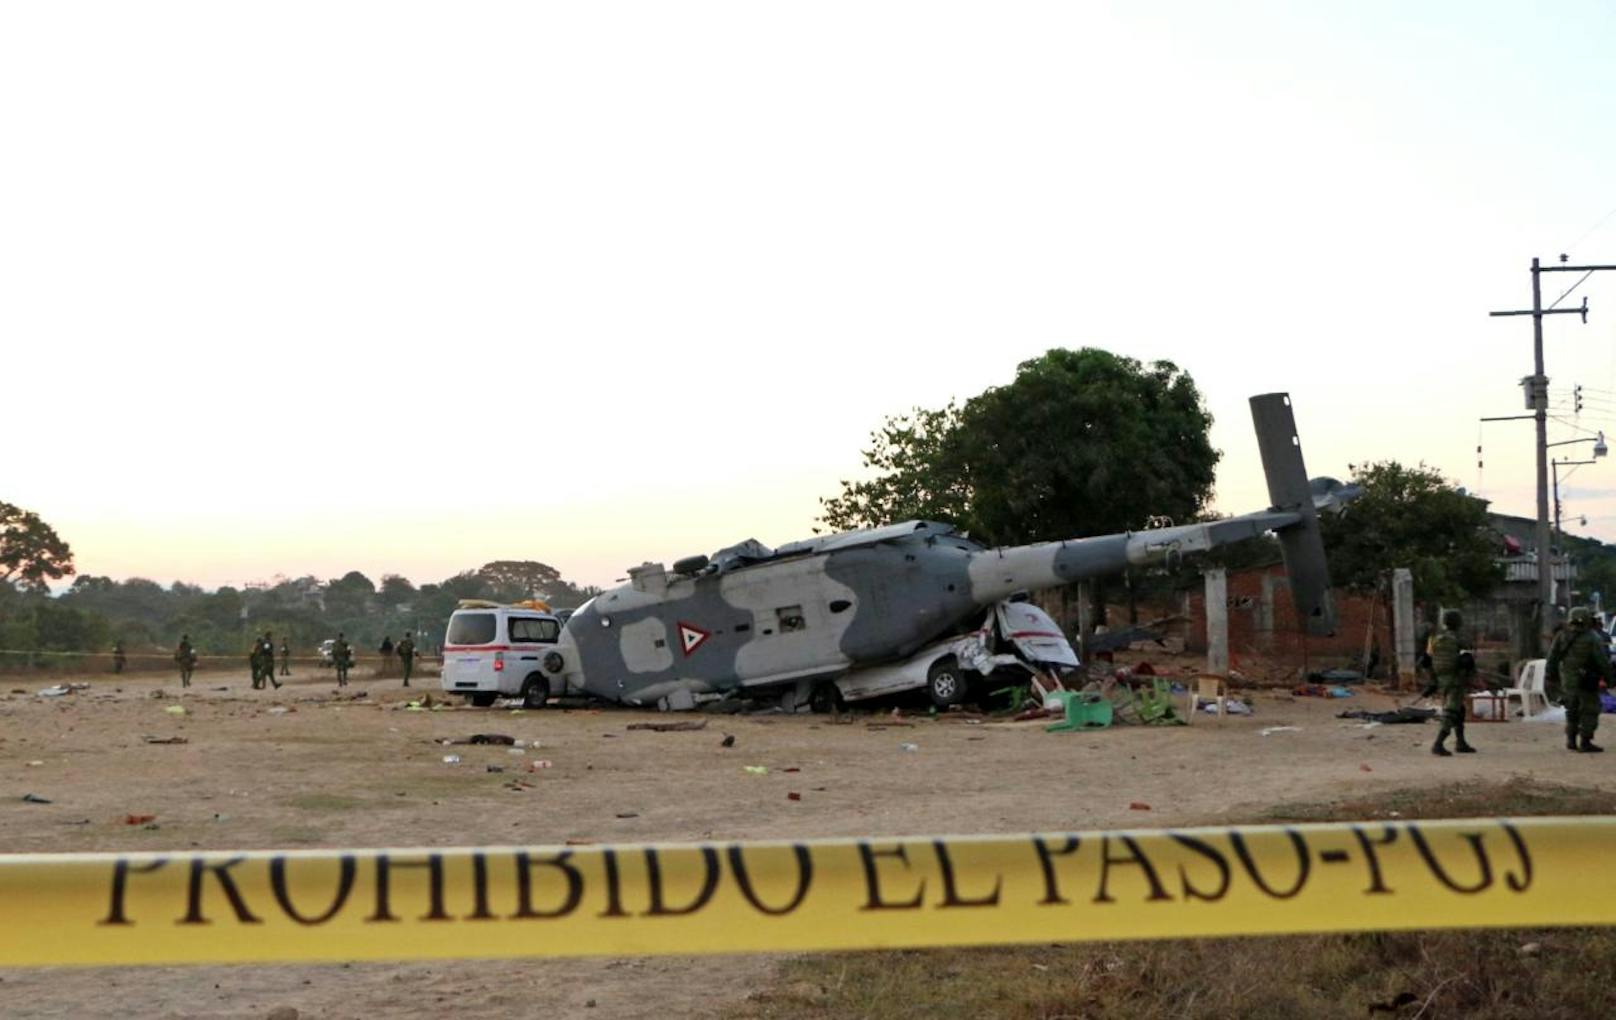 Der Pilot verlor kurz vor der Landung die Kontrolle und der Helikopter stürzte auf den letzten Metern ab.